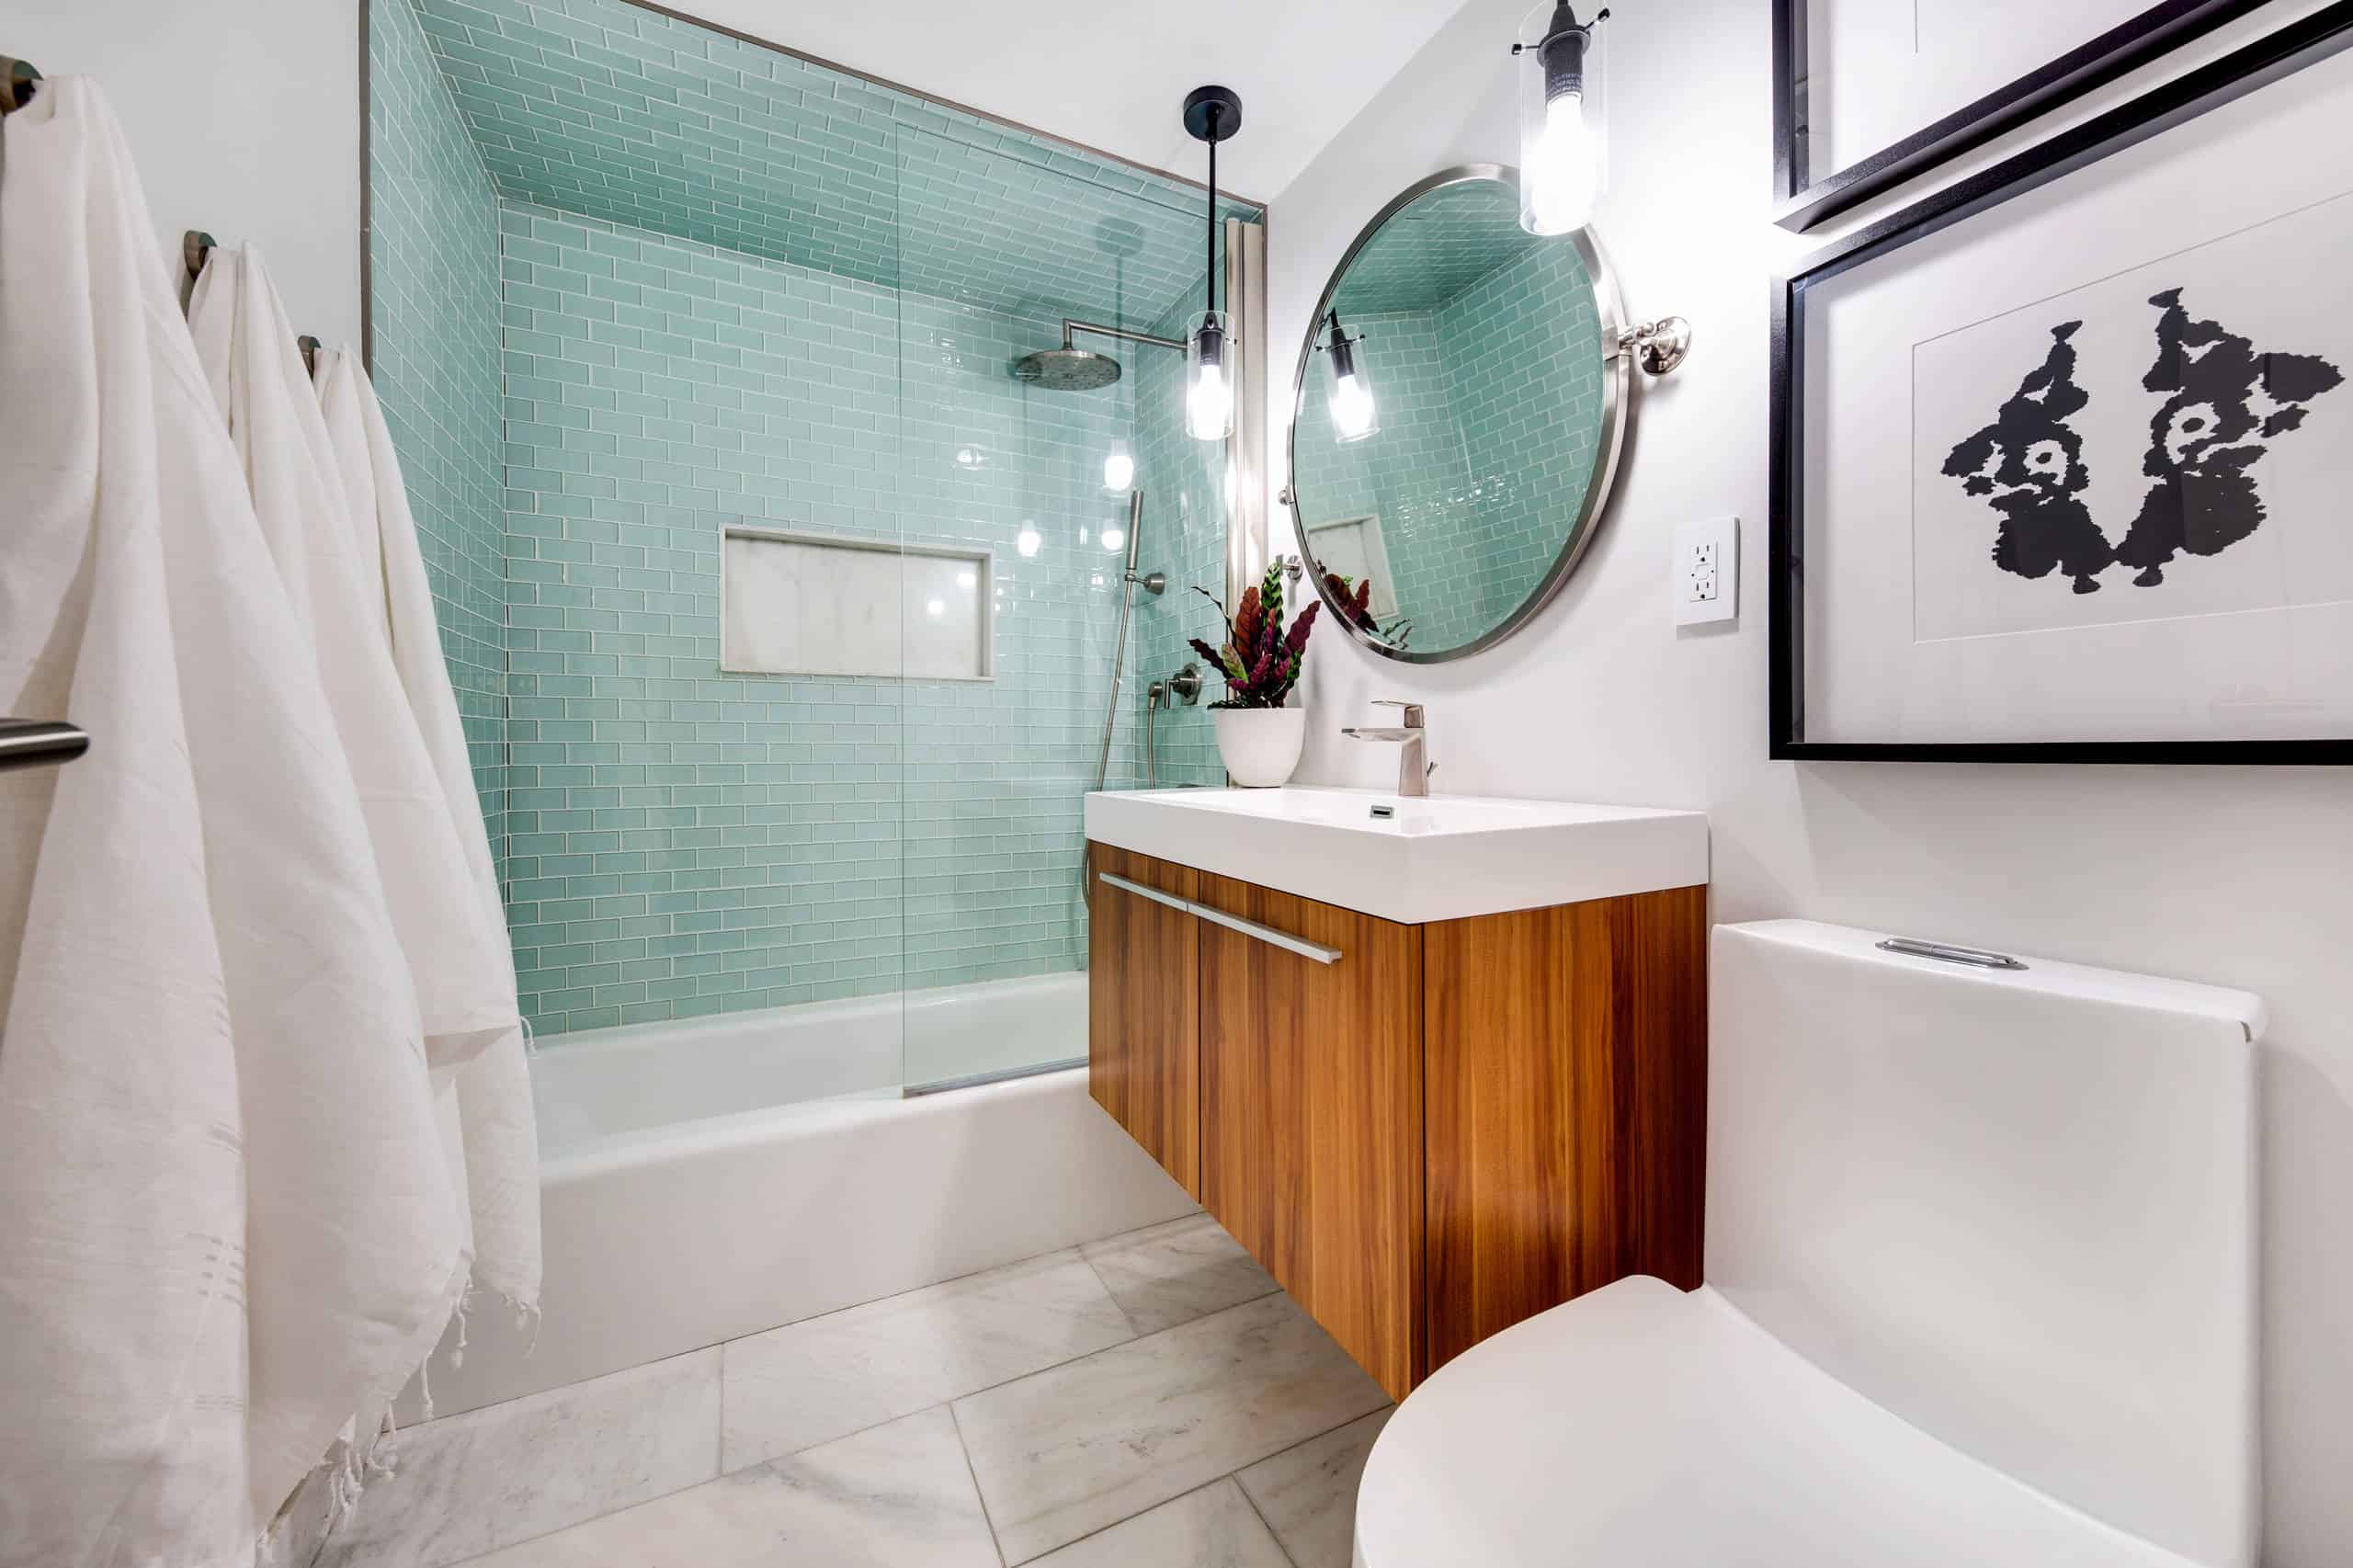 Small Bathroom Ideas With Bathtubs For 2021, Small Bathroom Tile Ideas